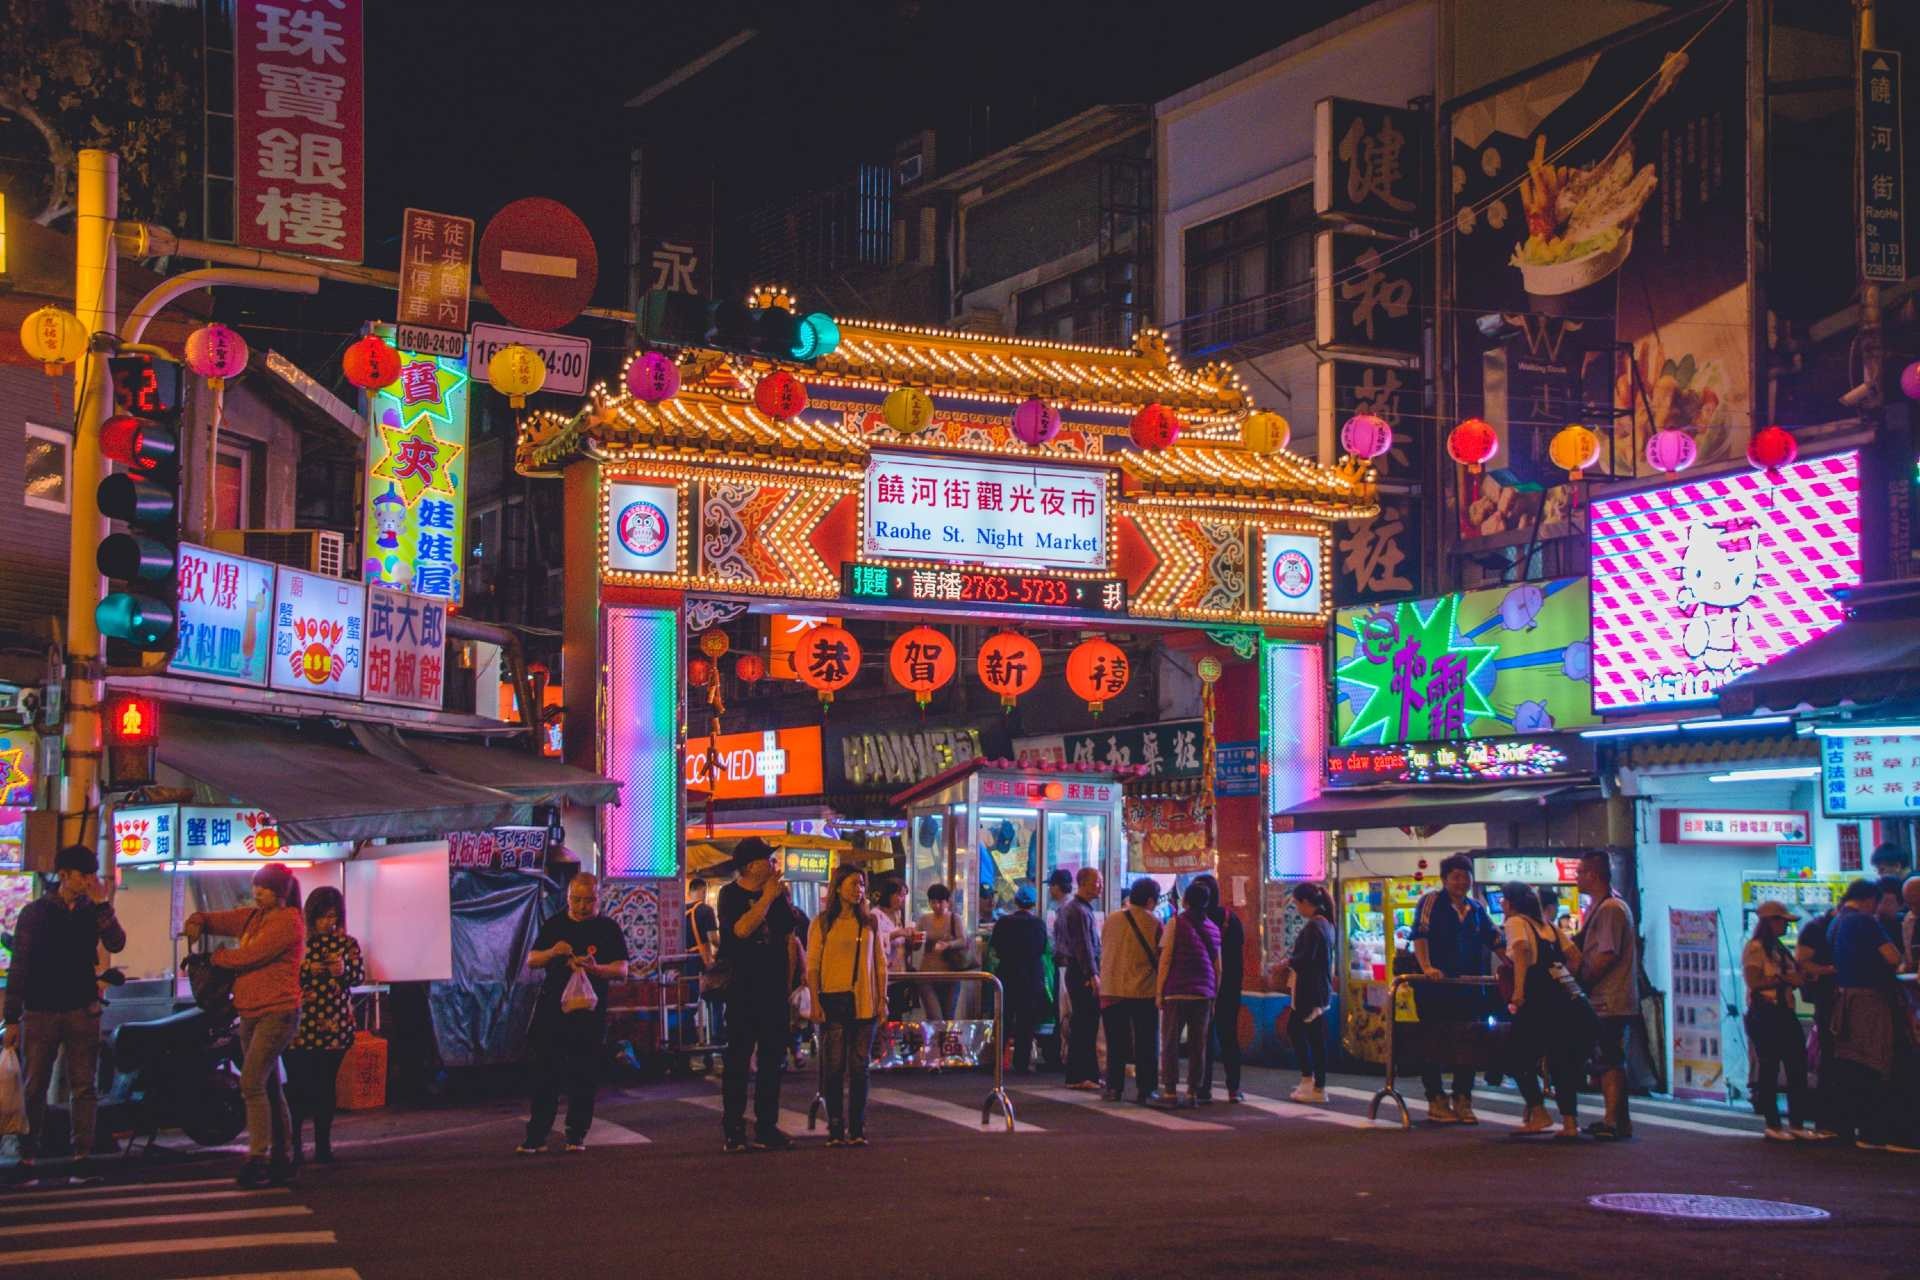 亞洲最佳旅遊目的地排名 台北5度蟬聯榜首 香港排第6